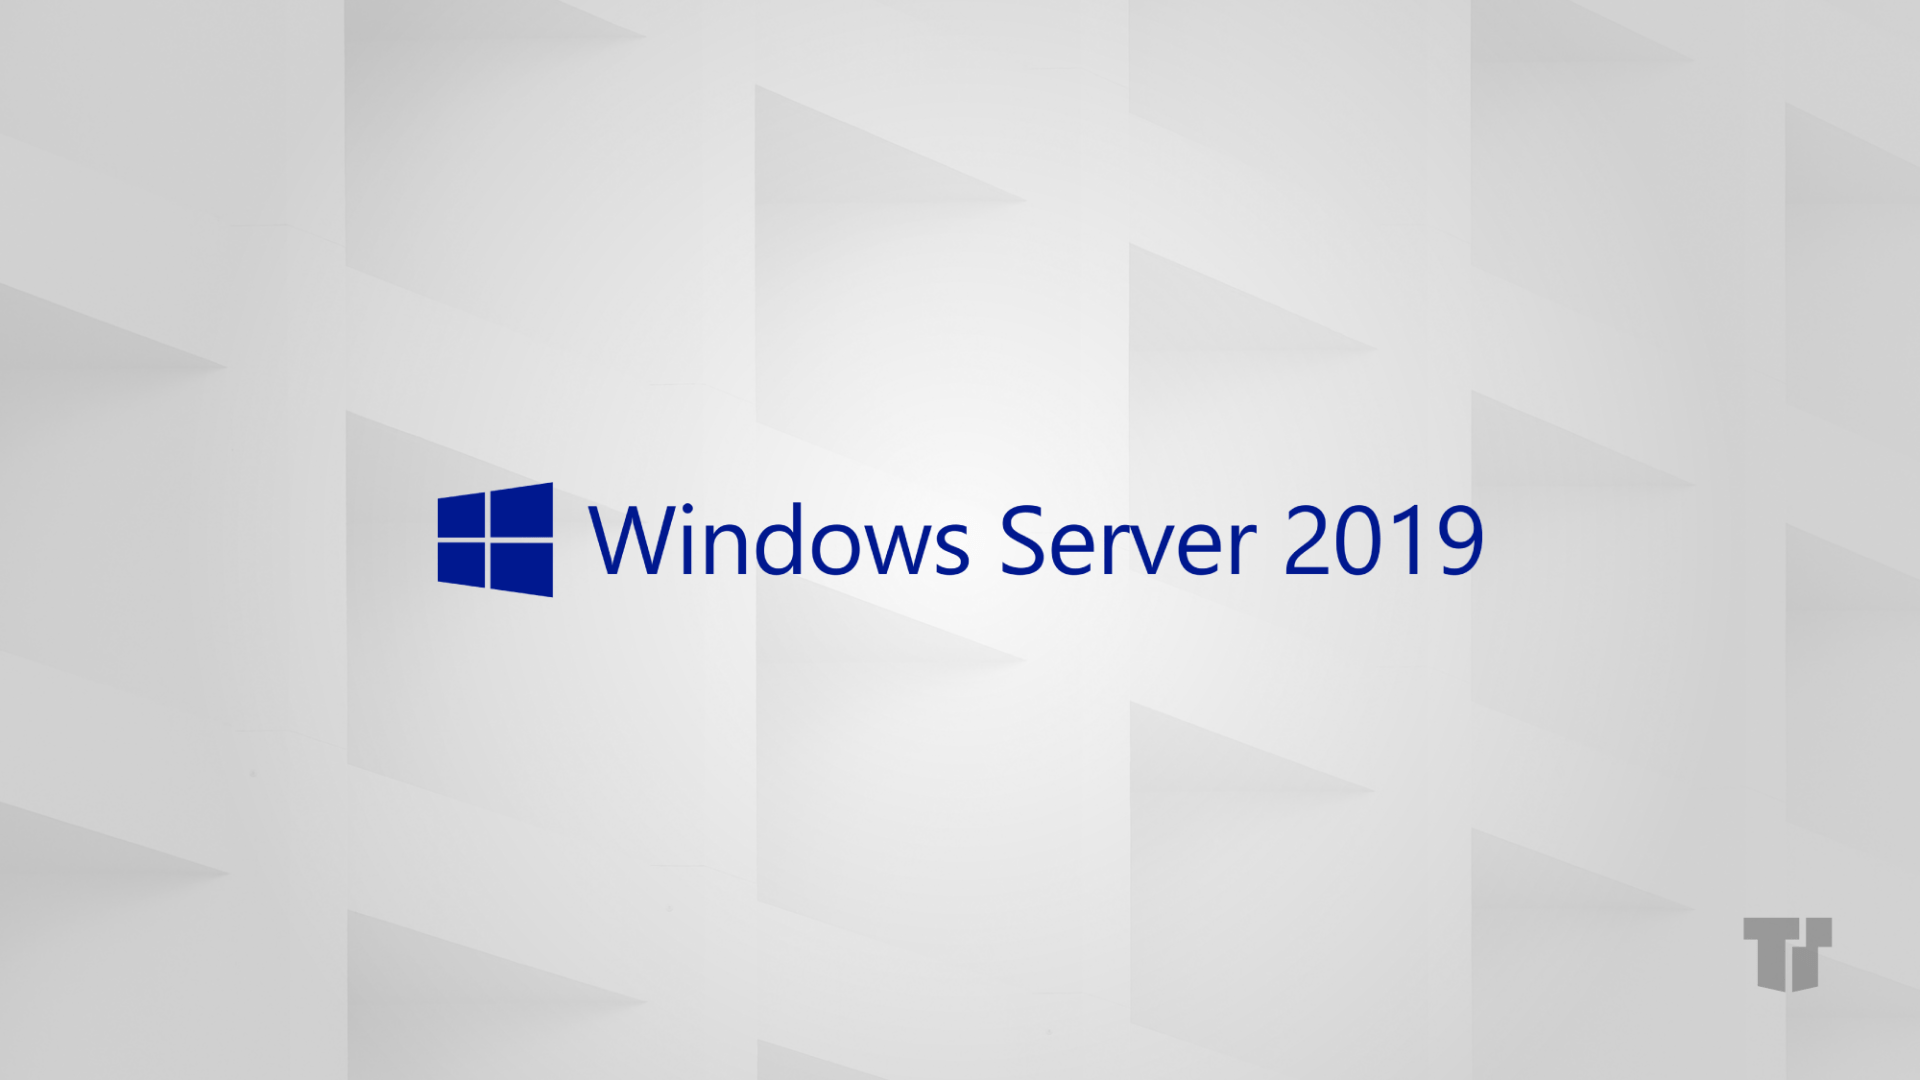 Windows Server 2019 ISO